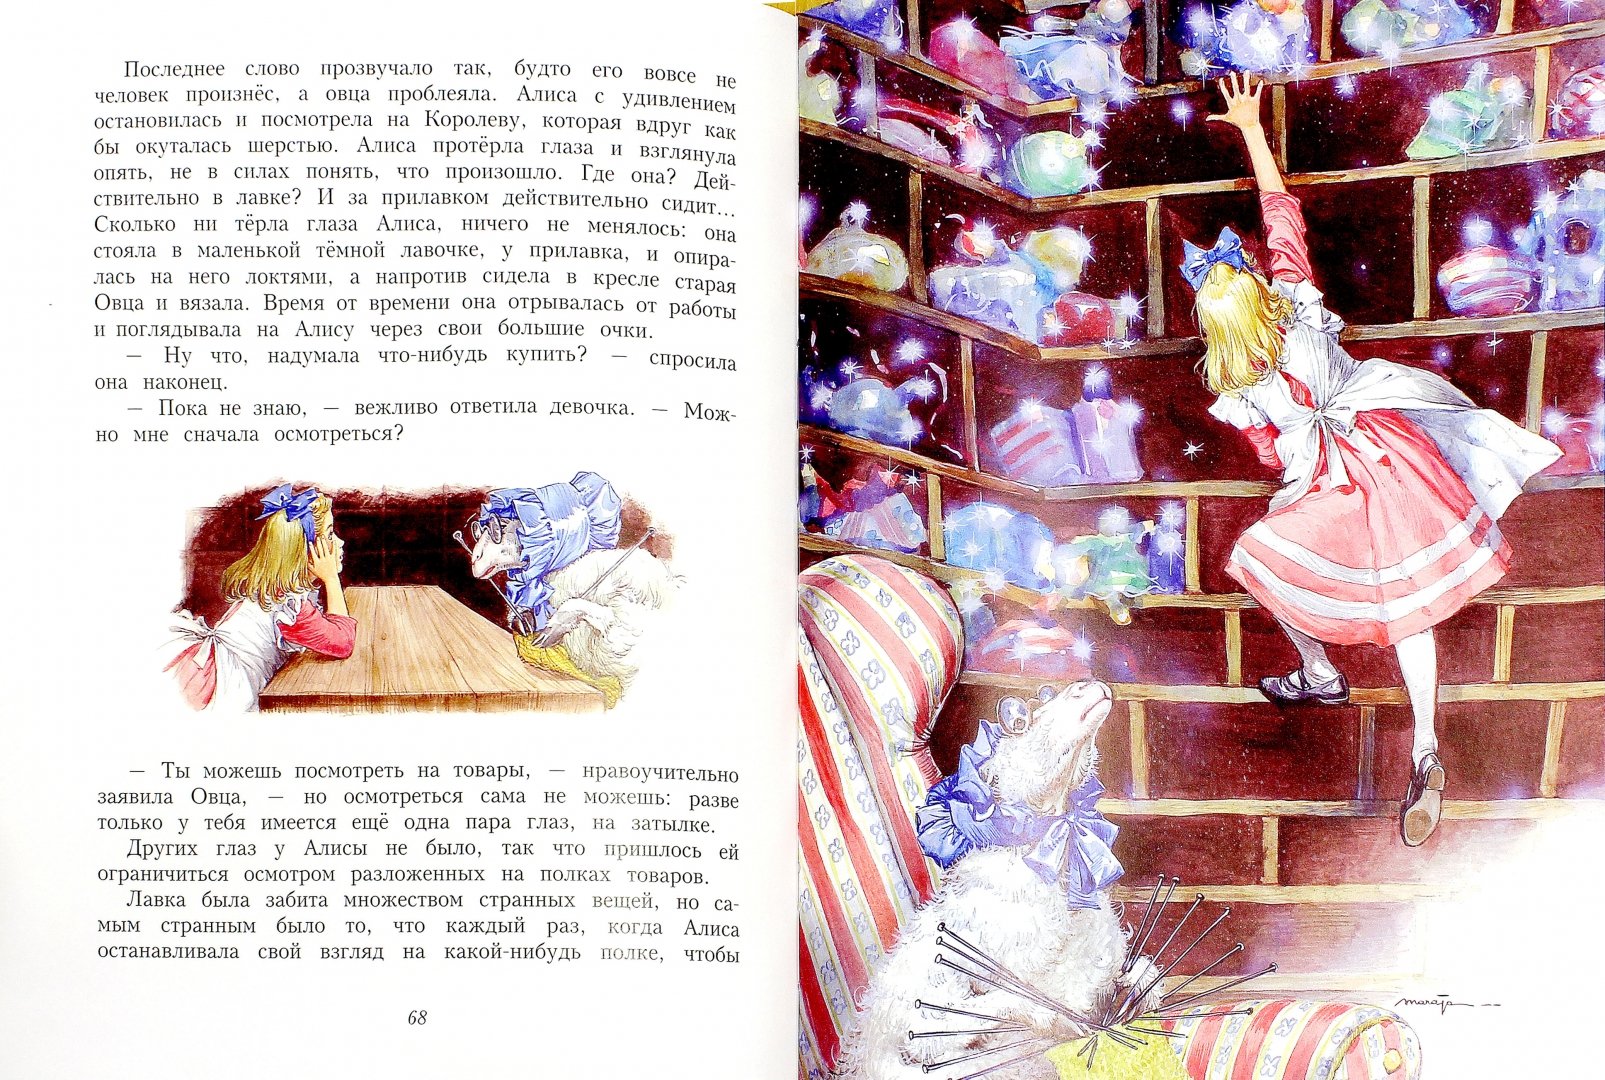 Иллюстрация 1 из 19 для Алиса в Зазеркалье - Льюис Кэрролл | Лабиринт - книги. Источник: Лабиринт